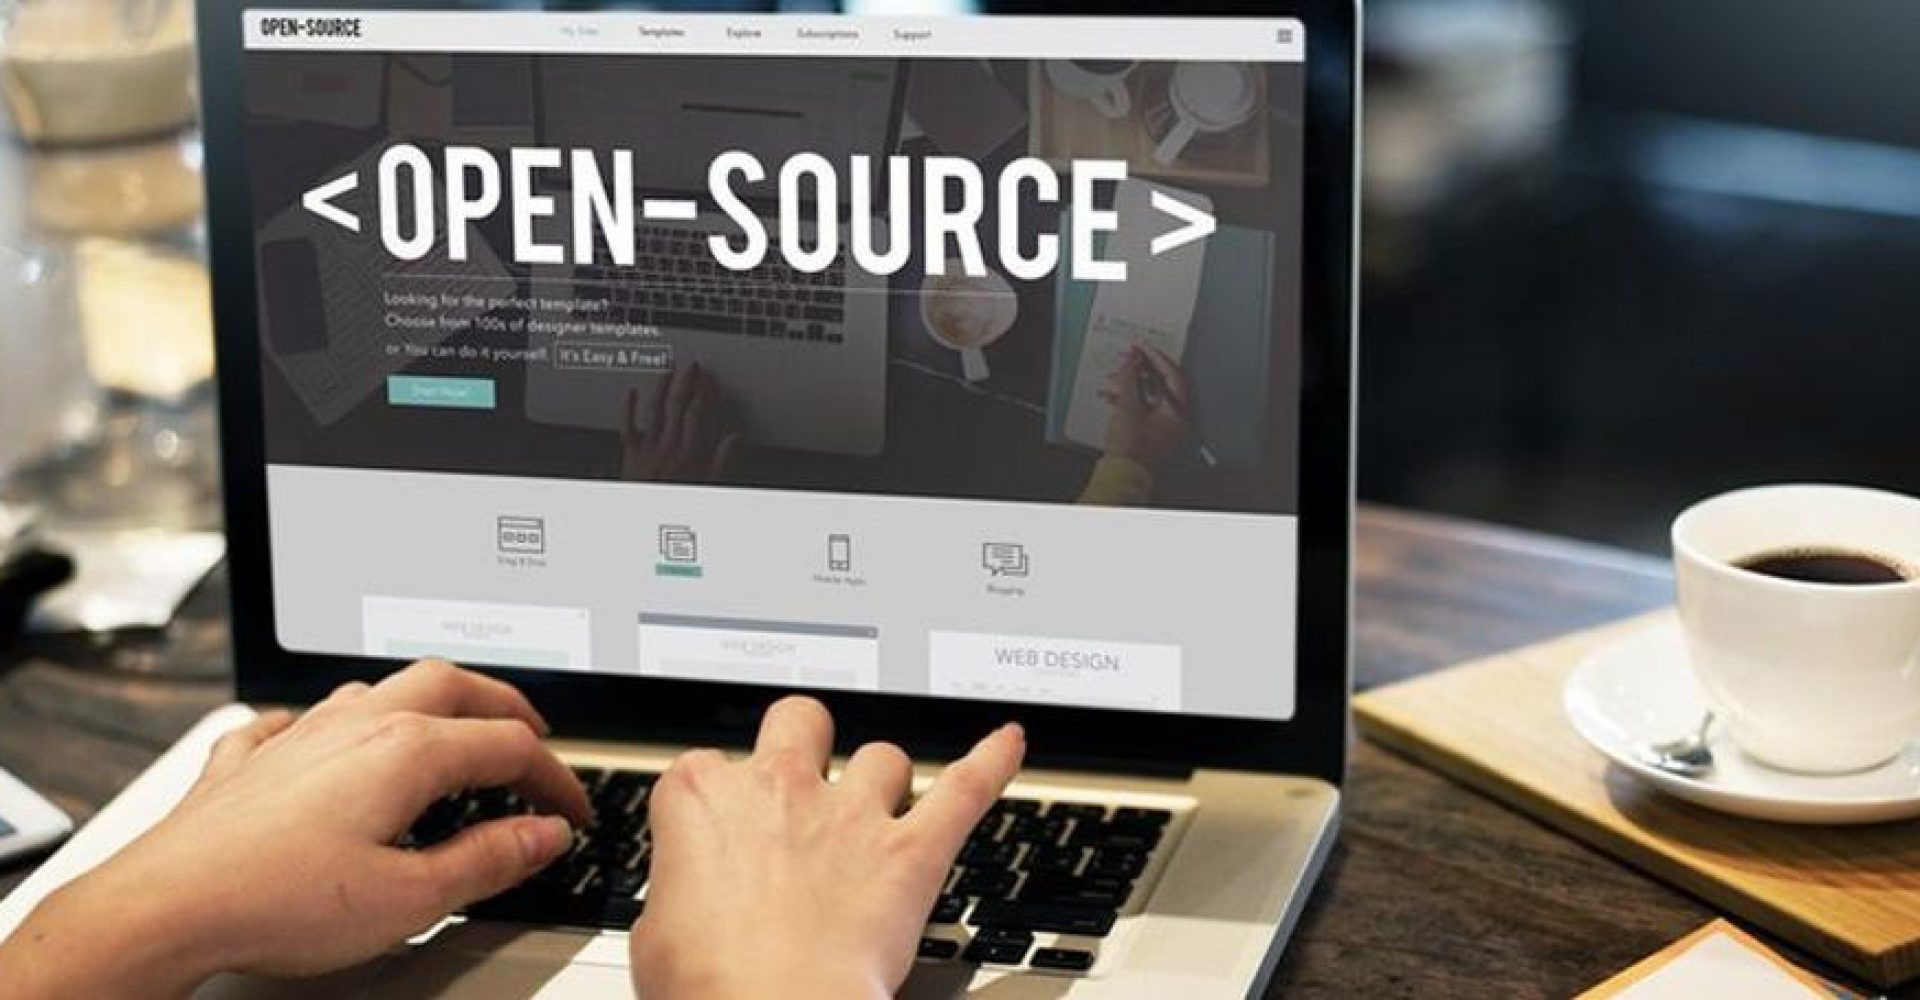 Open Source: o que é?